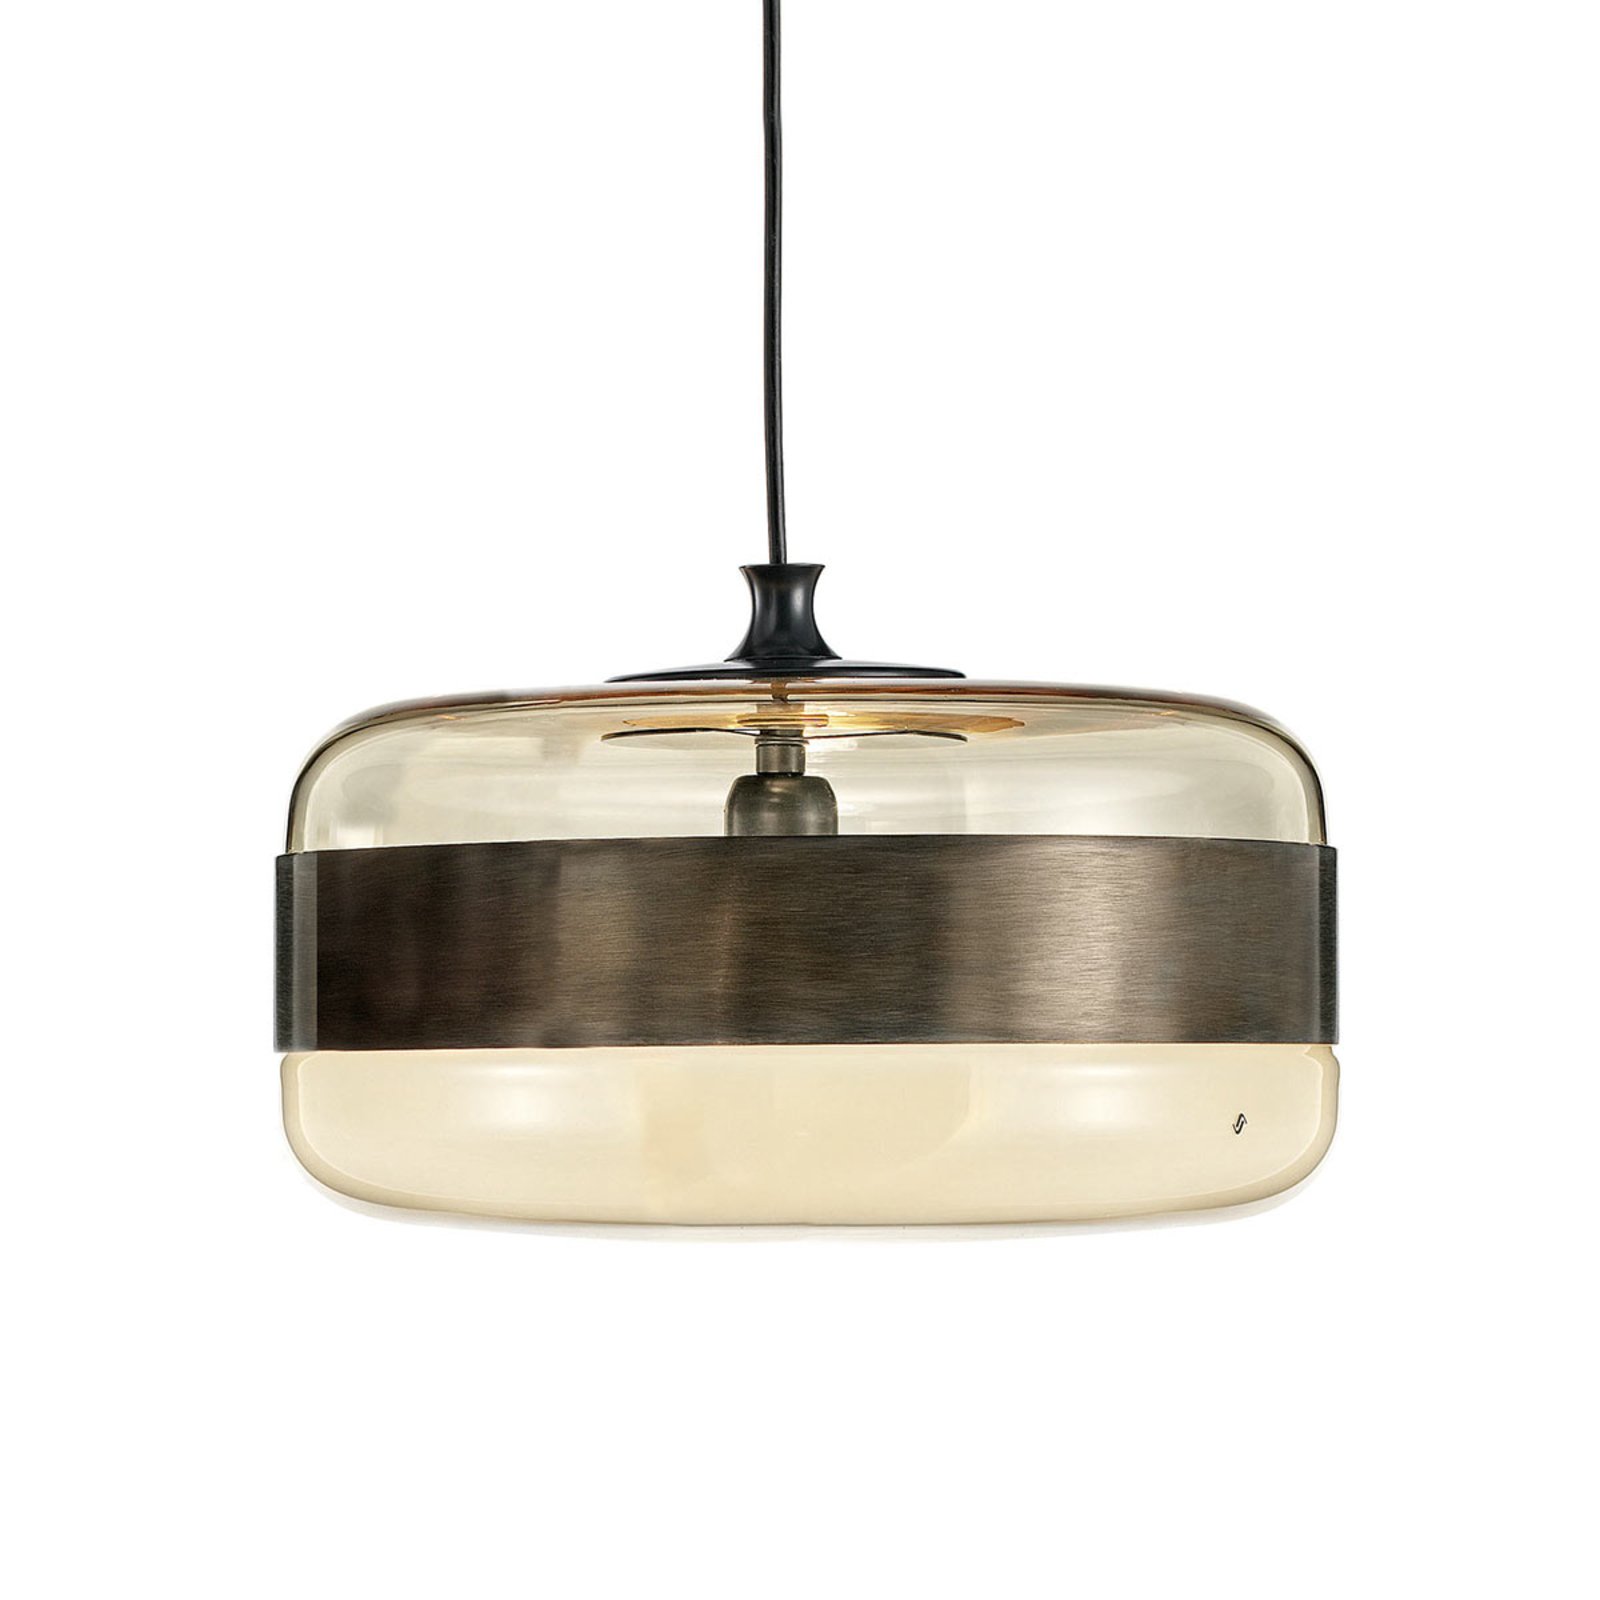 Szklana lampa wisząca Futura w brązie, 40 cm